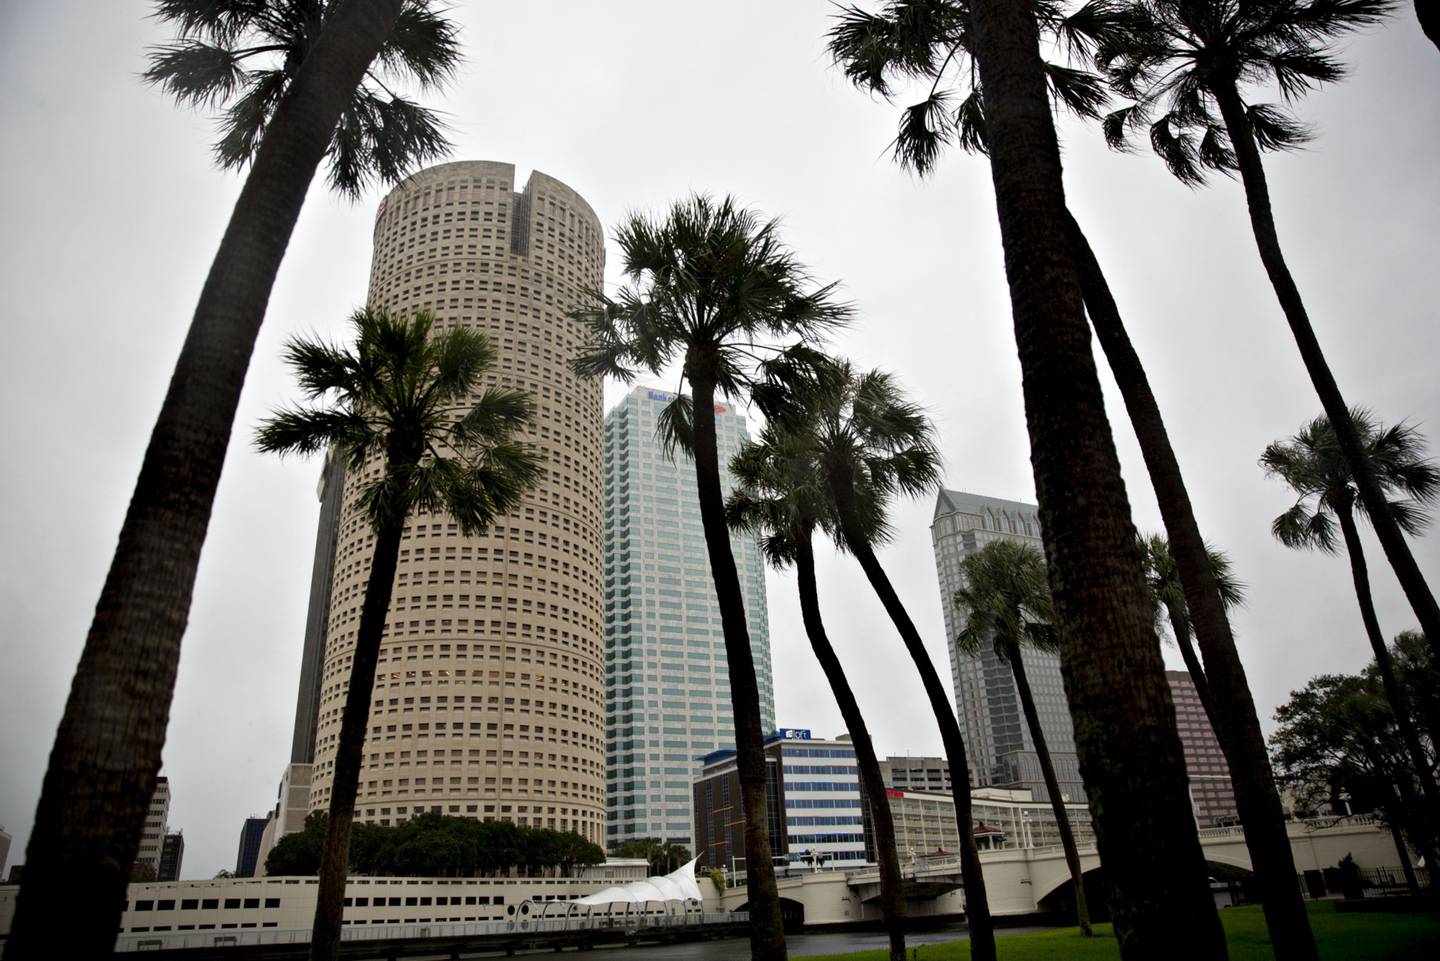 Edificios de oficinas se levantan en el centro de Tampa, Florida, Estados Unidos. Fotógrafo: Daniel Acker/Bloomberg